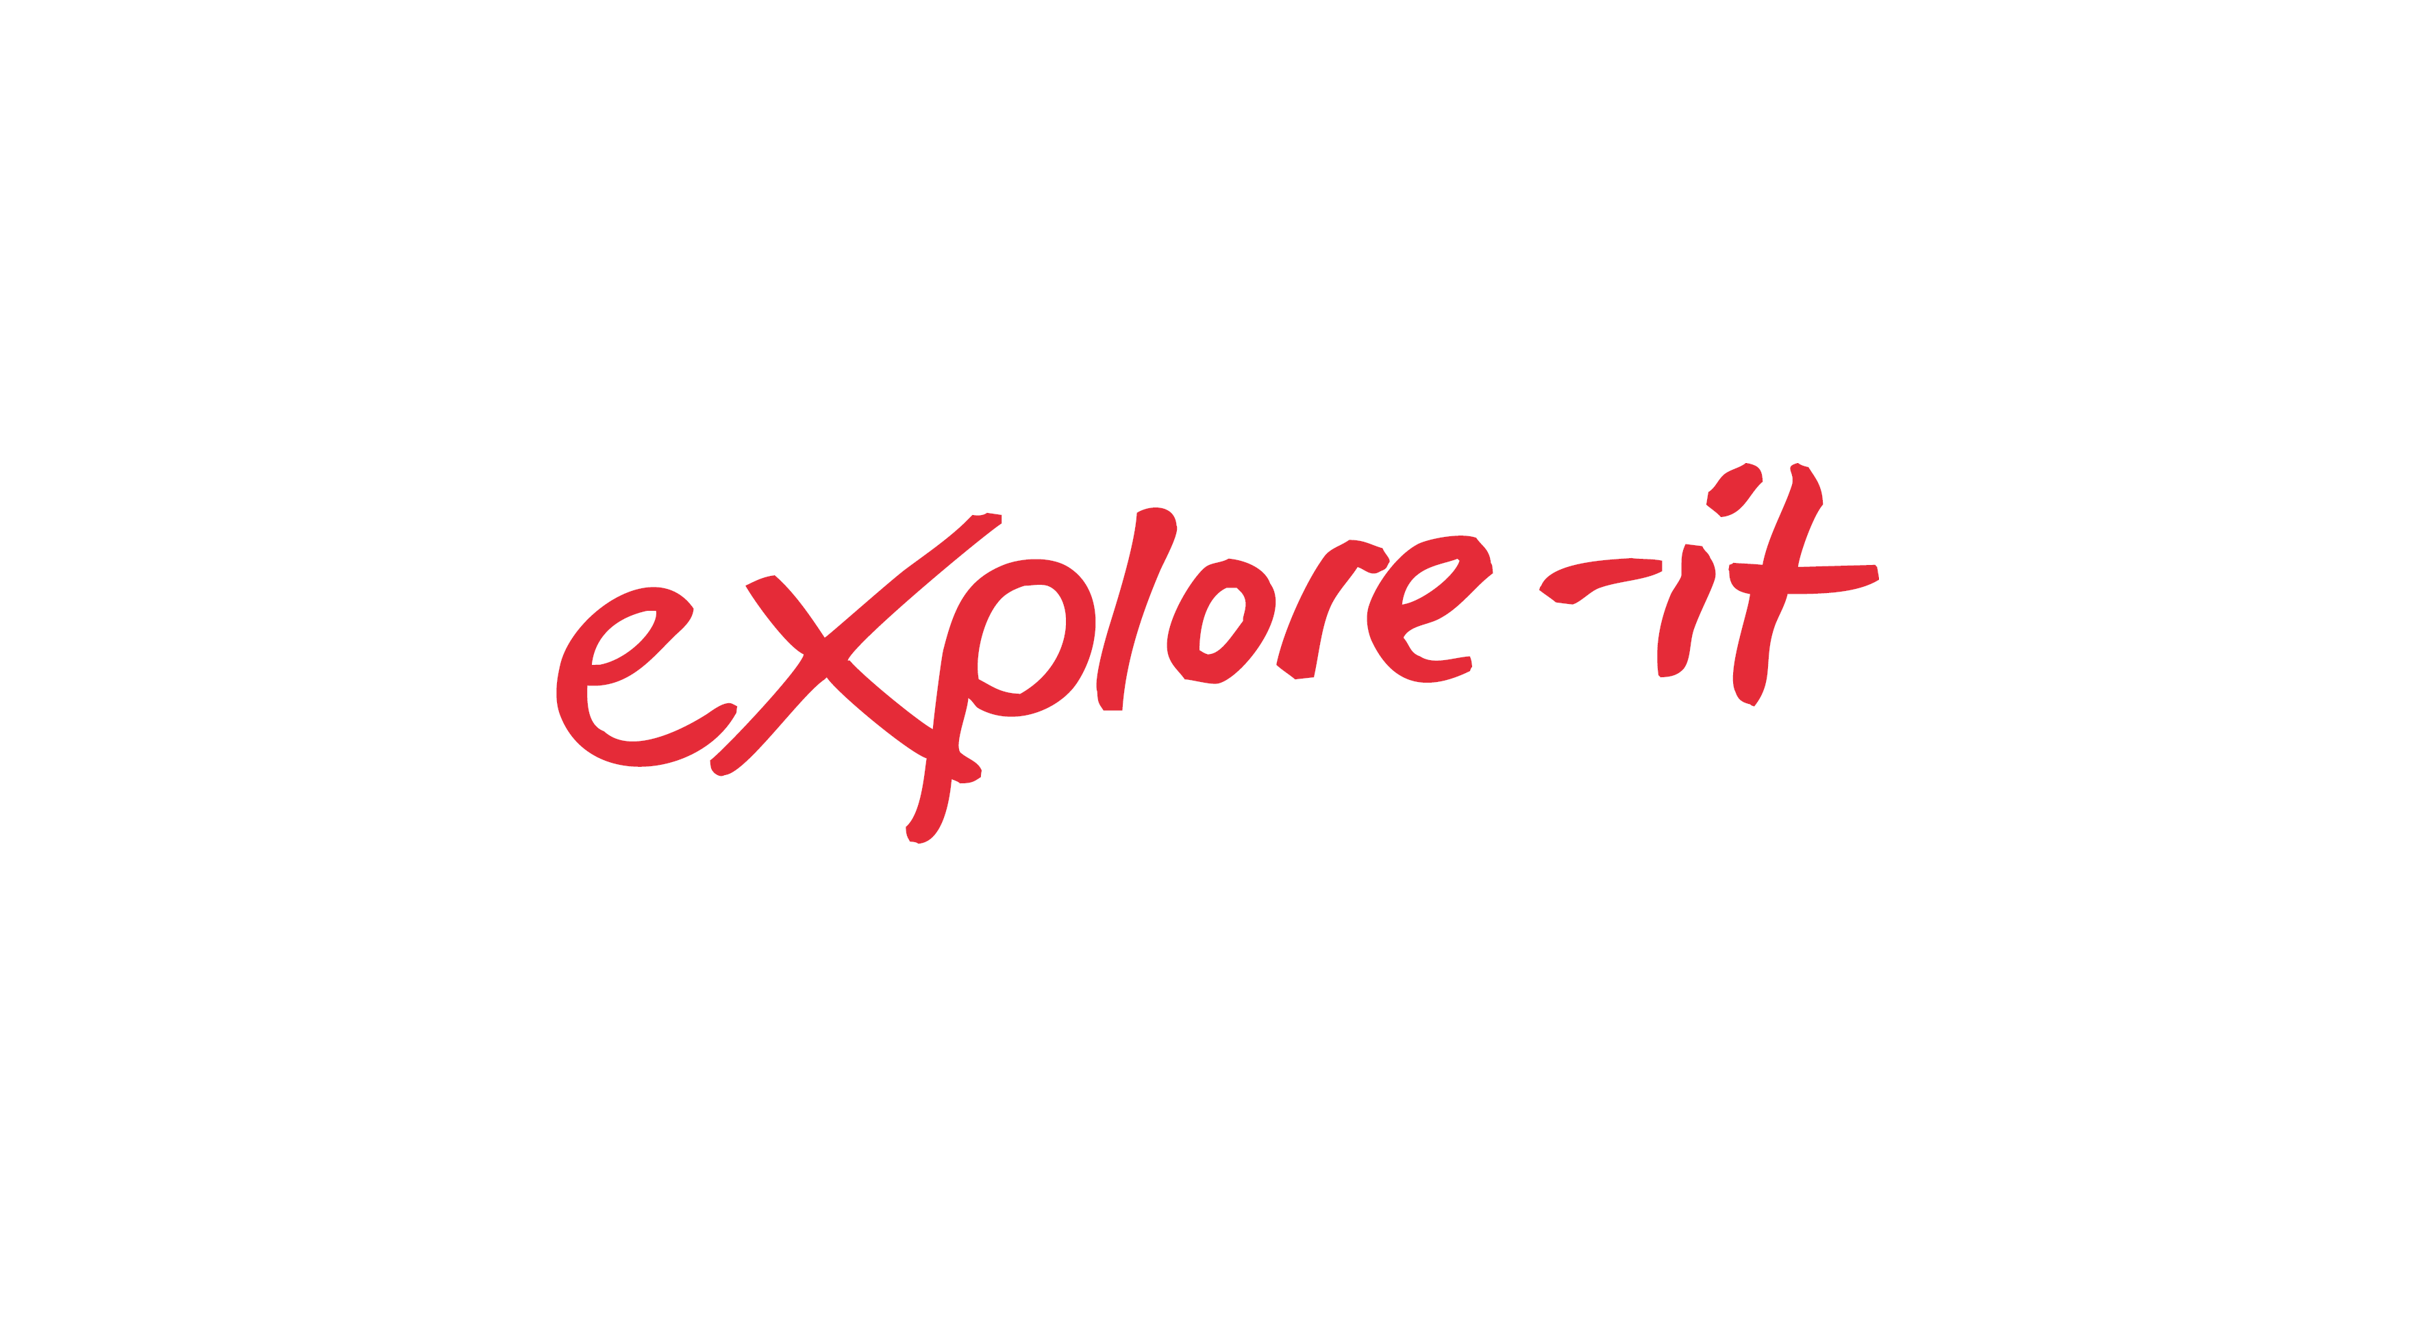 Explore-it